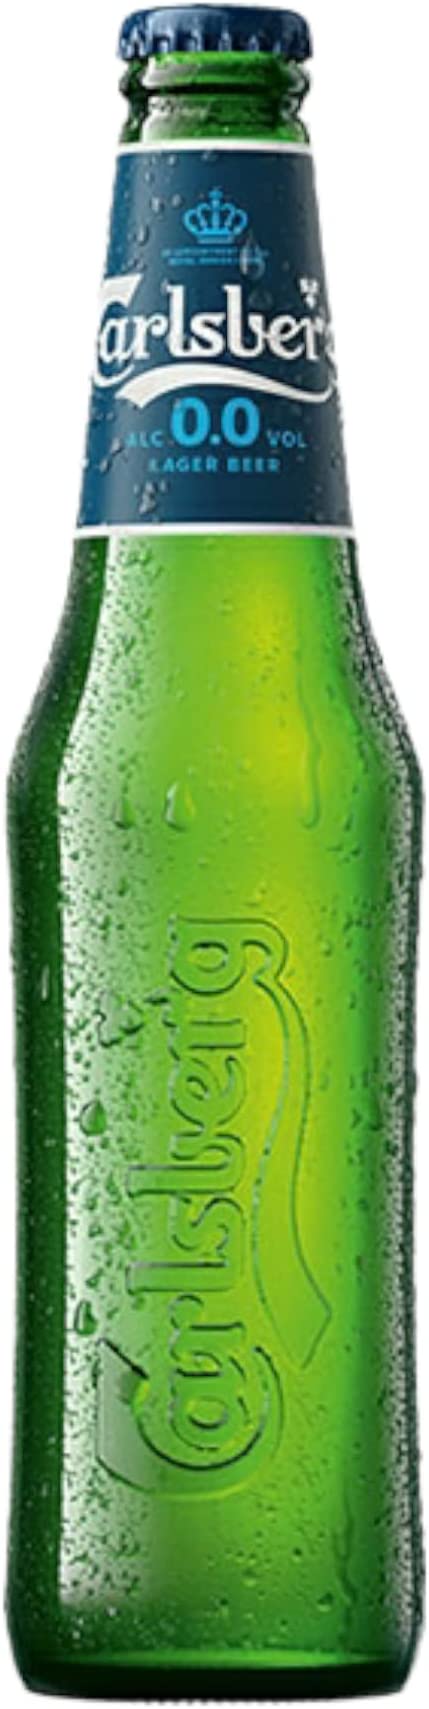 Carlsberg 0,33l - alkoholfreies Lager 0,00% Alk.